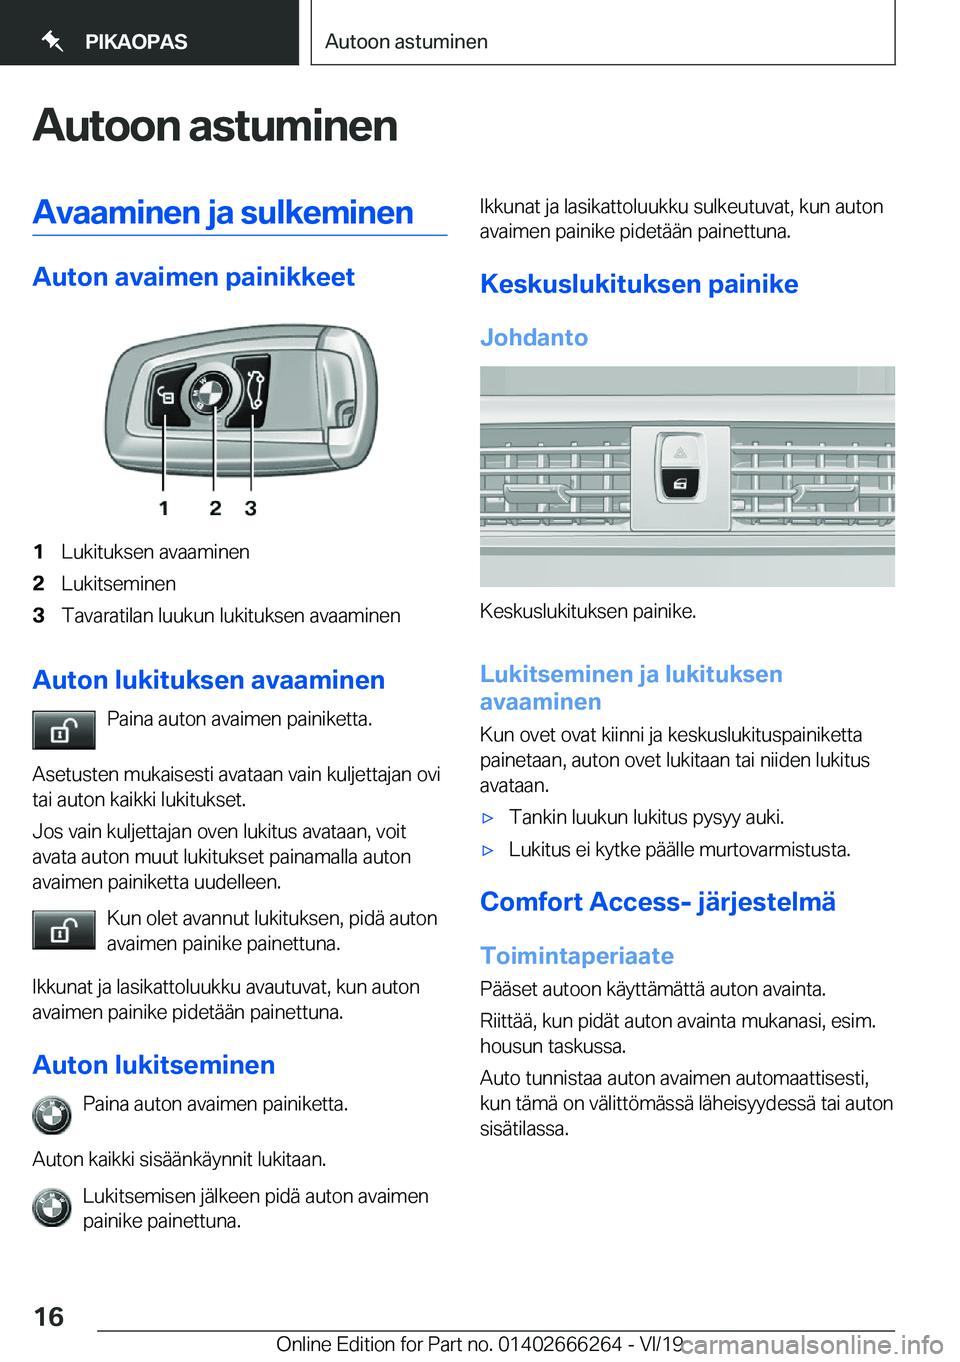 BMW 2 SERIES COUPE 2020  Omistajan Käsikirjat (in Finnish) �A�u�t�o�o�n��a�s�t�u�m�i�n�e�n�A�v�a�a�m�i�n�e�n��j�a��s�u�l�k�e�m�i�n�e�n
�A�u�t�o�n��a�v�a�i�m�e�n��p�a�i�n�i�k�k�e�e�t
�1�L�u�k�i�t�u�k�s�e�n��a�v�a�a�m�i�n�e�n�2�L�u�k�i�t�s�e�m�i�n�e�n�3�T